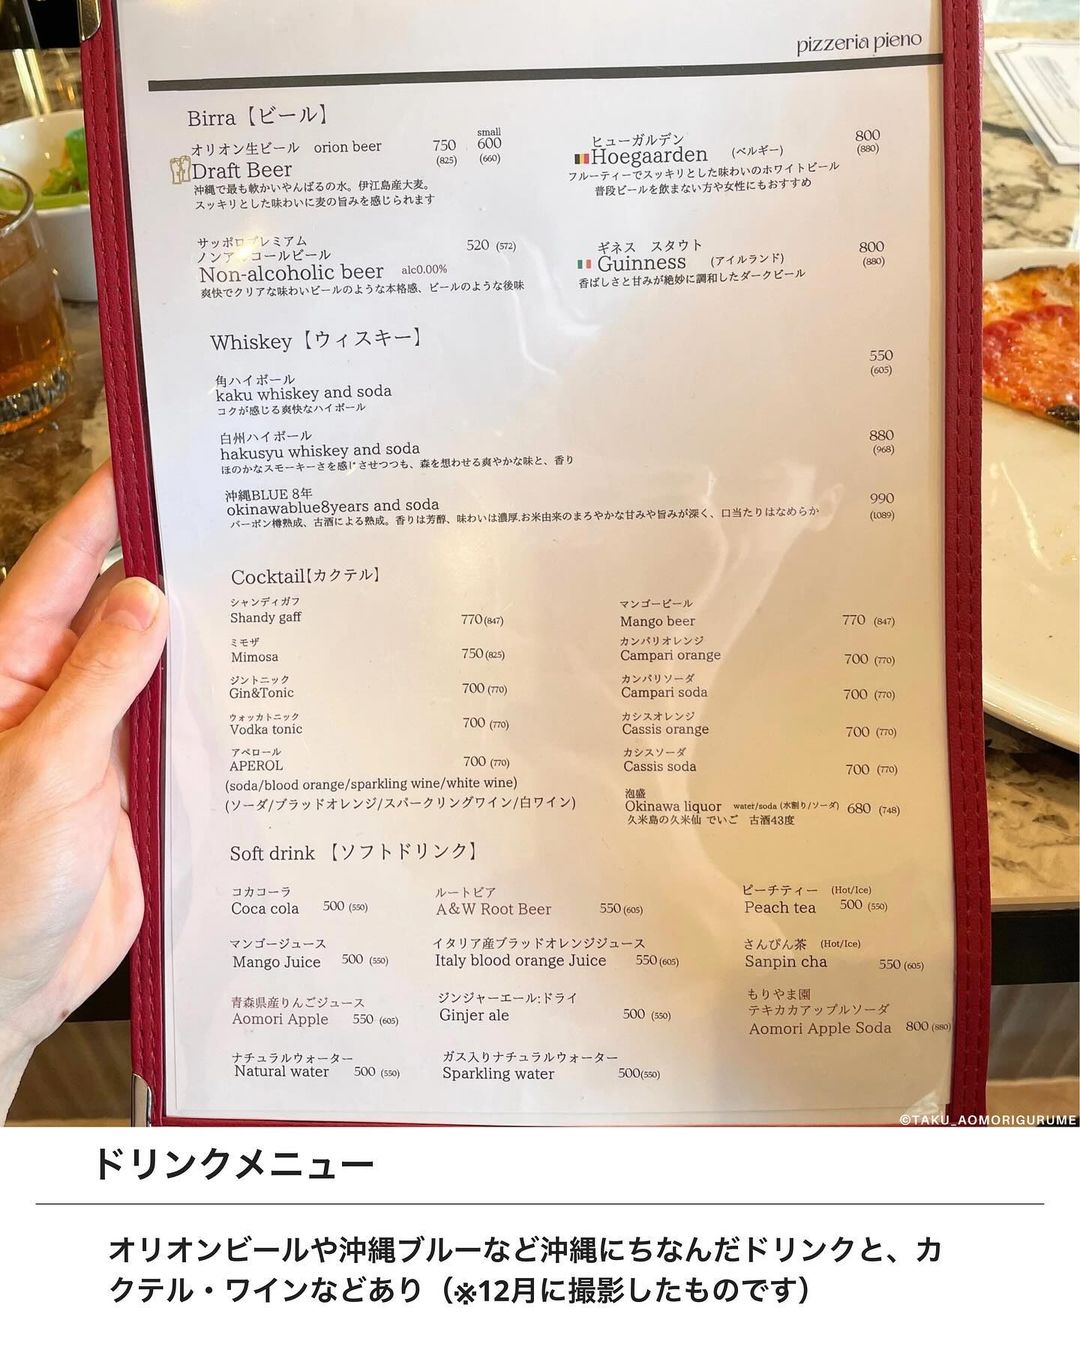 【弘前市・pizzeria pieno】ドリンクメニュー